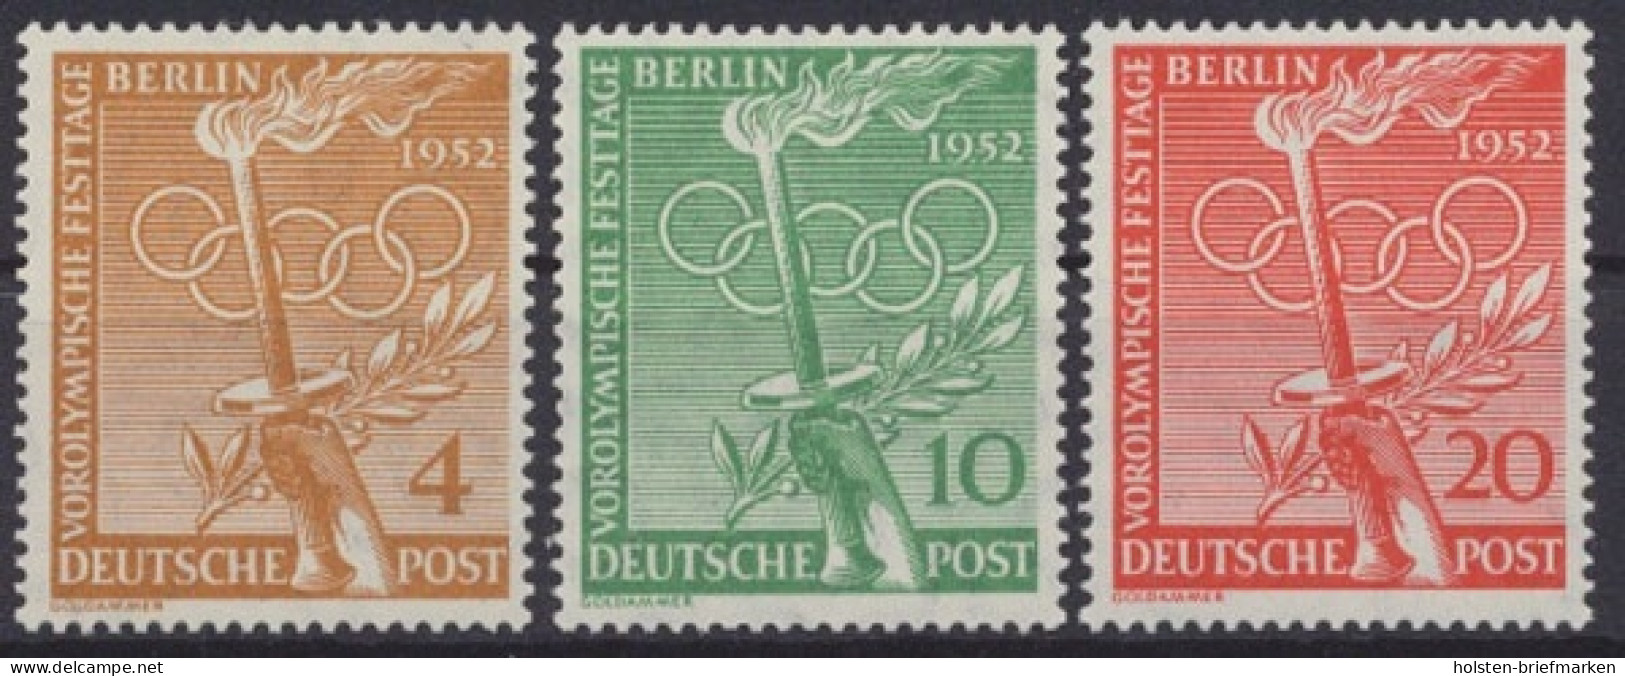 Berlin, Michel Nr. 88-90, Postfrisch / MNH - Unused Stamps